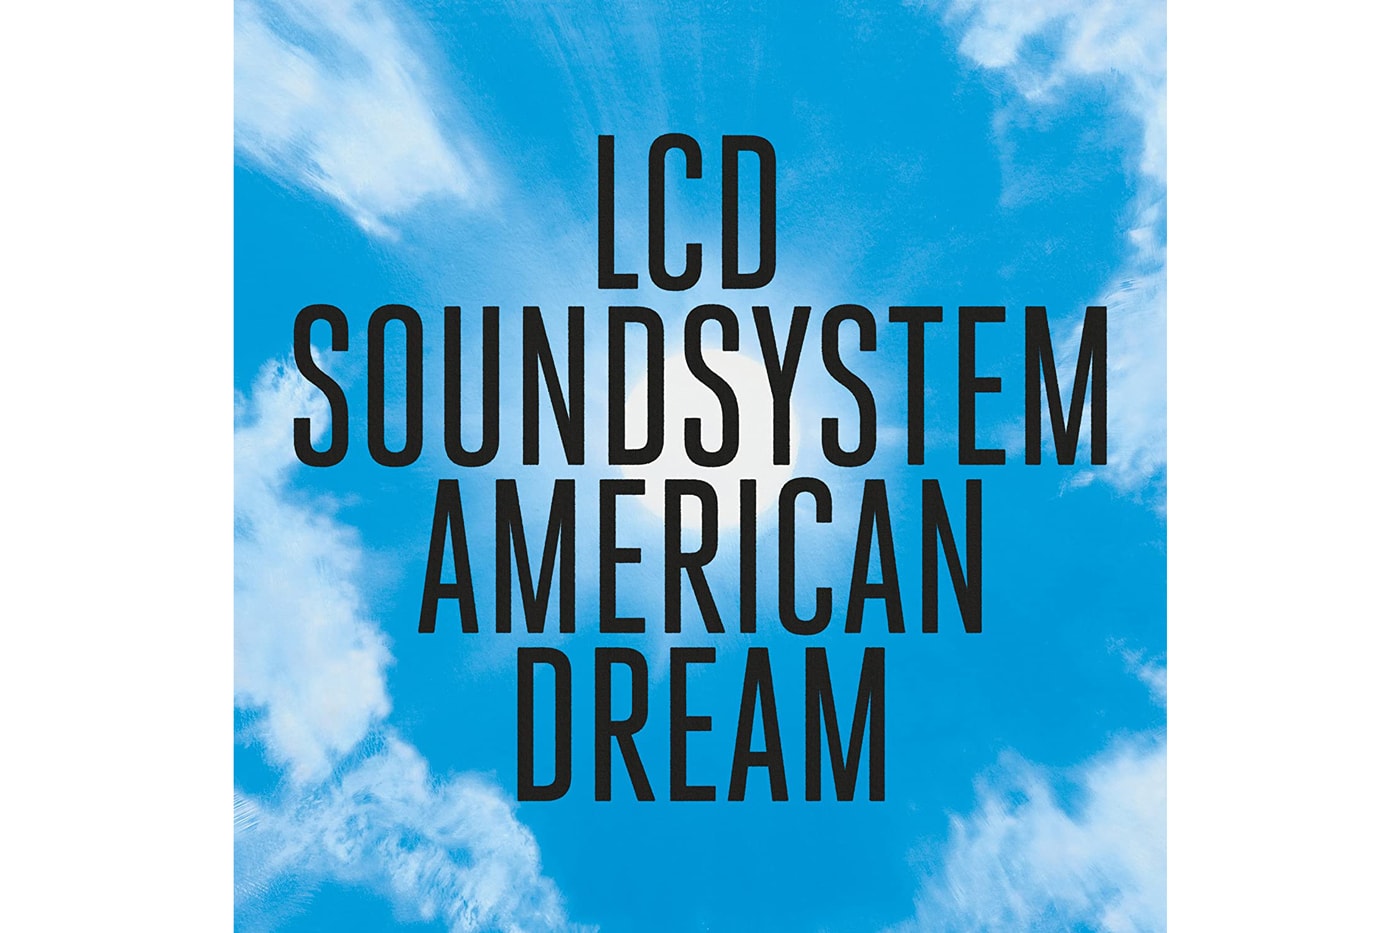 LCD Soundsystem American Dream Album Stream 2017 September 1